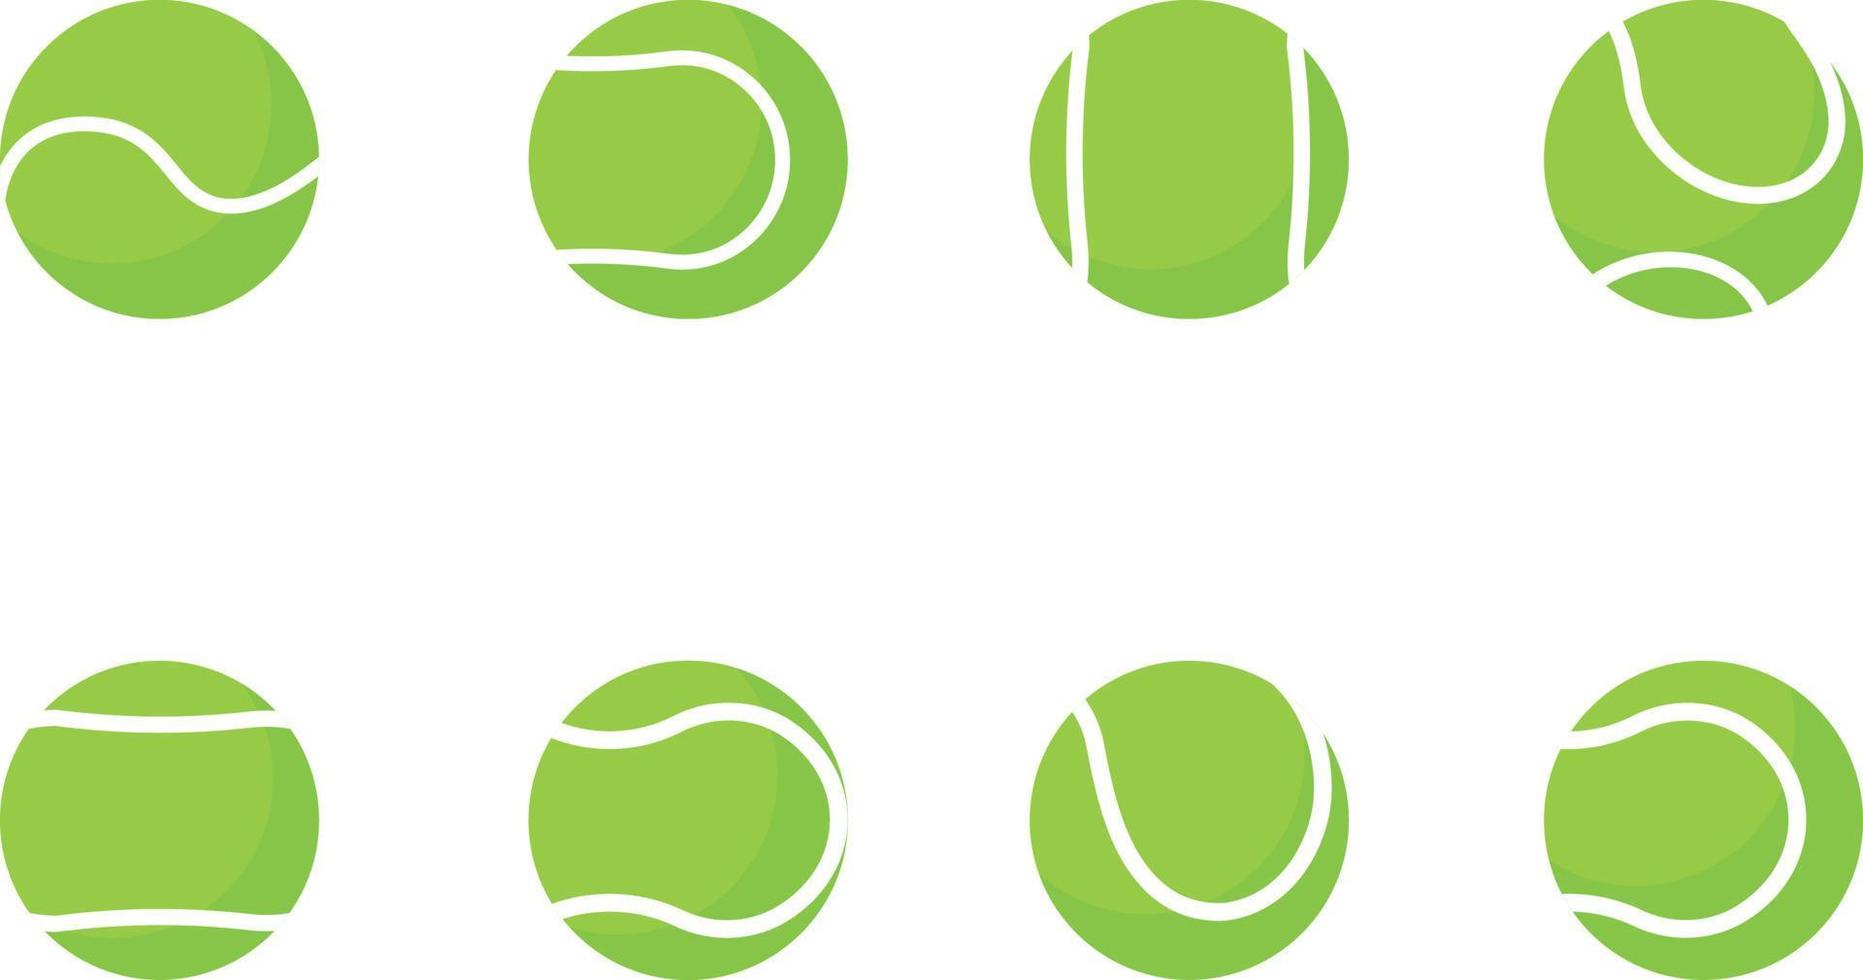 Vektor grüne Tennisball-Sammlung. Tennisball-Set isoliert auf weißem Hintergrund